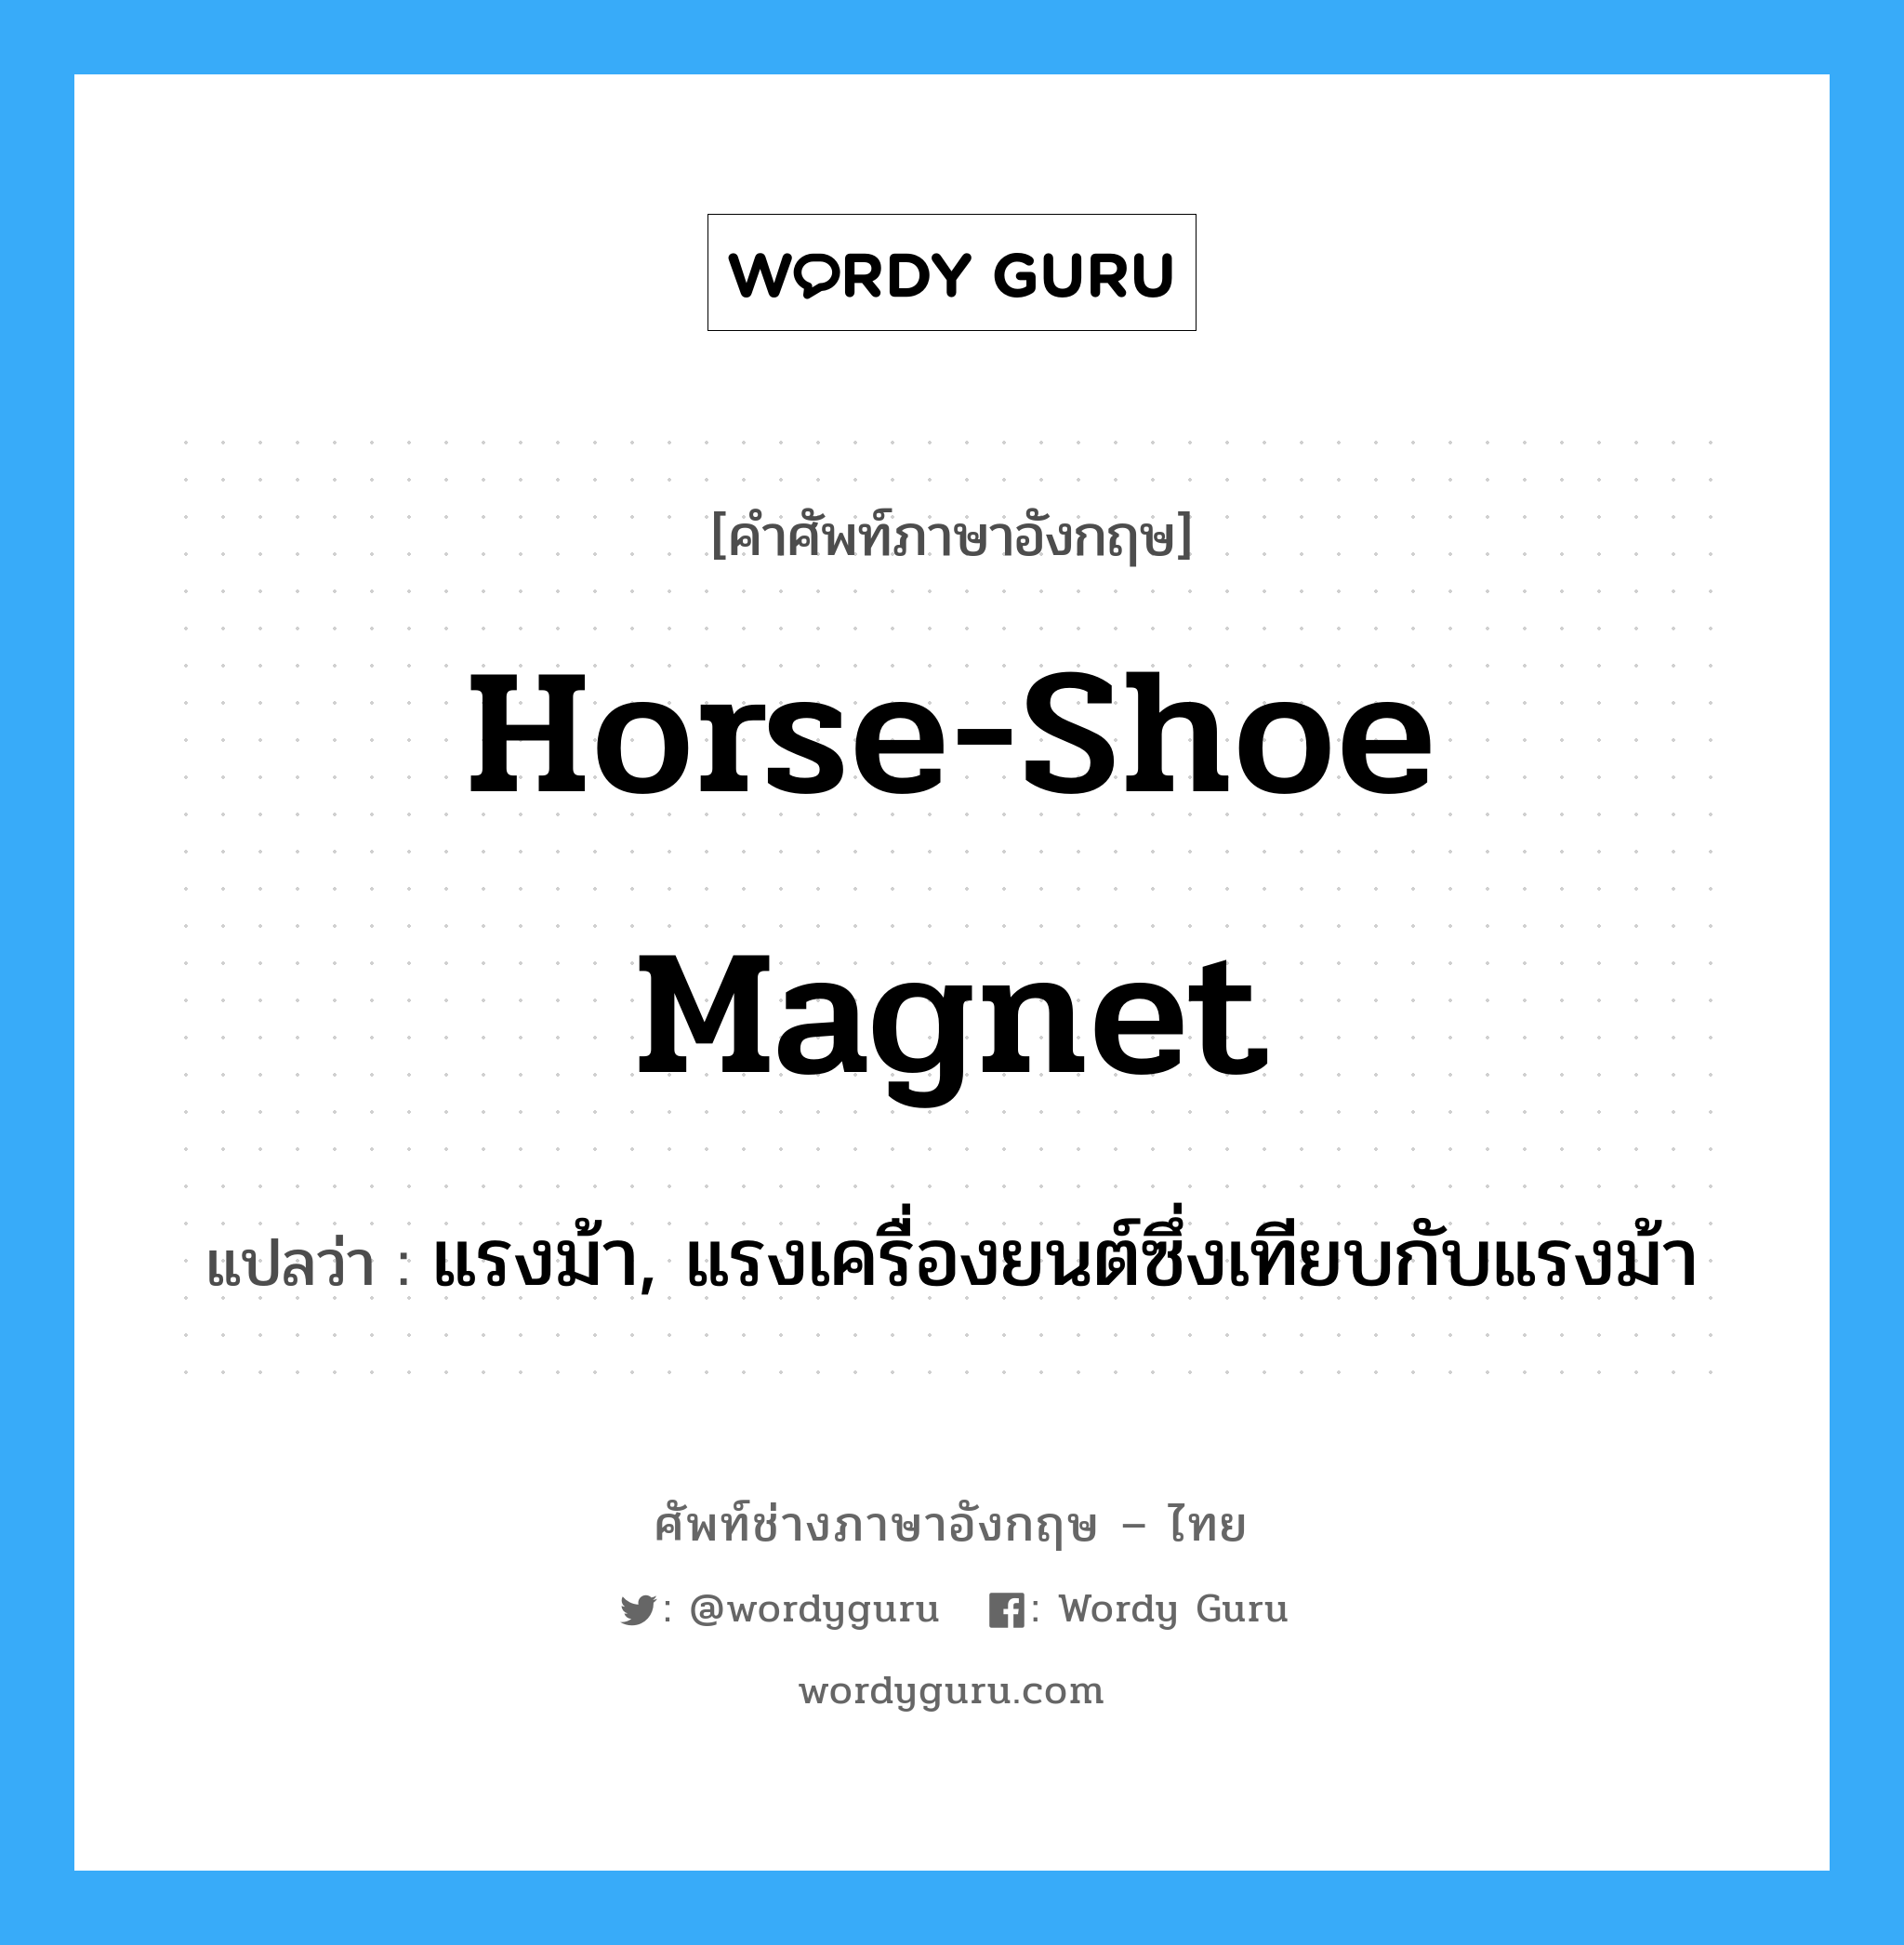 horse-shoe magnet แปลว่า?, คำศัพท์ช่างภาษาอังกฤษ - ไทย horse-shoe magnet คำศัพท์ภาษาอังกฤษ horse-shoe magnet แปลว่า แรงม้า, แรงเครื่องยนต์ซึ่งเทียบกับแรงม้า